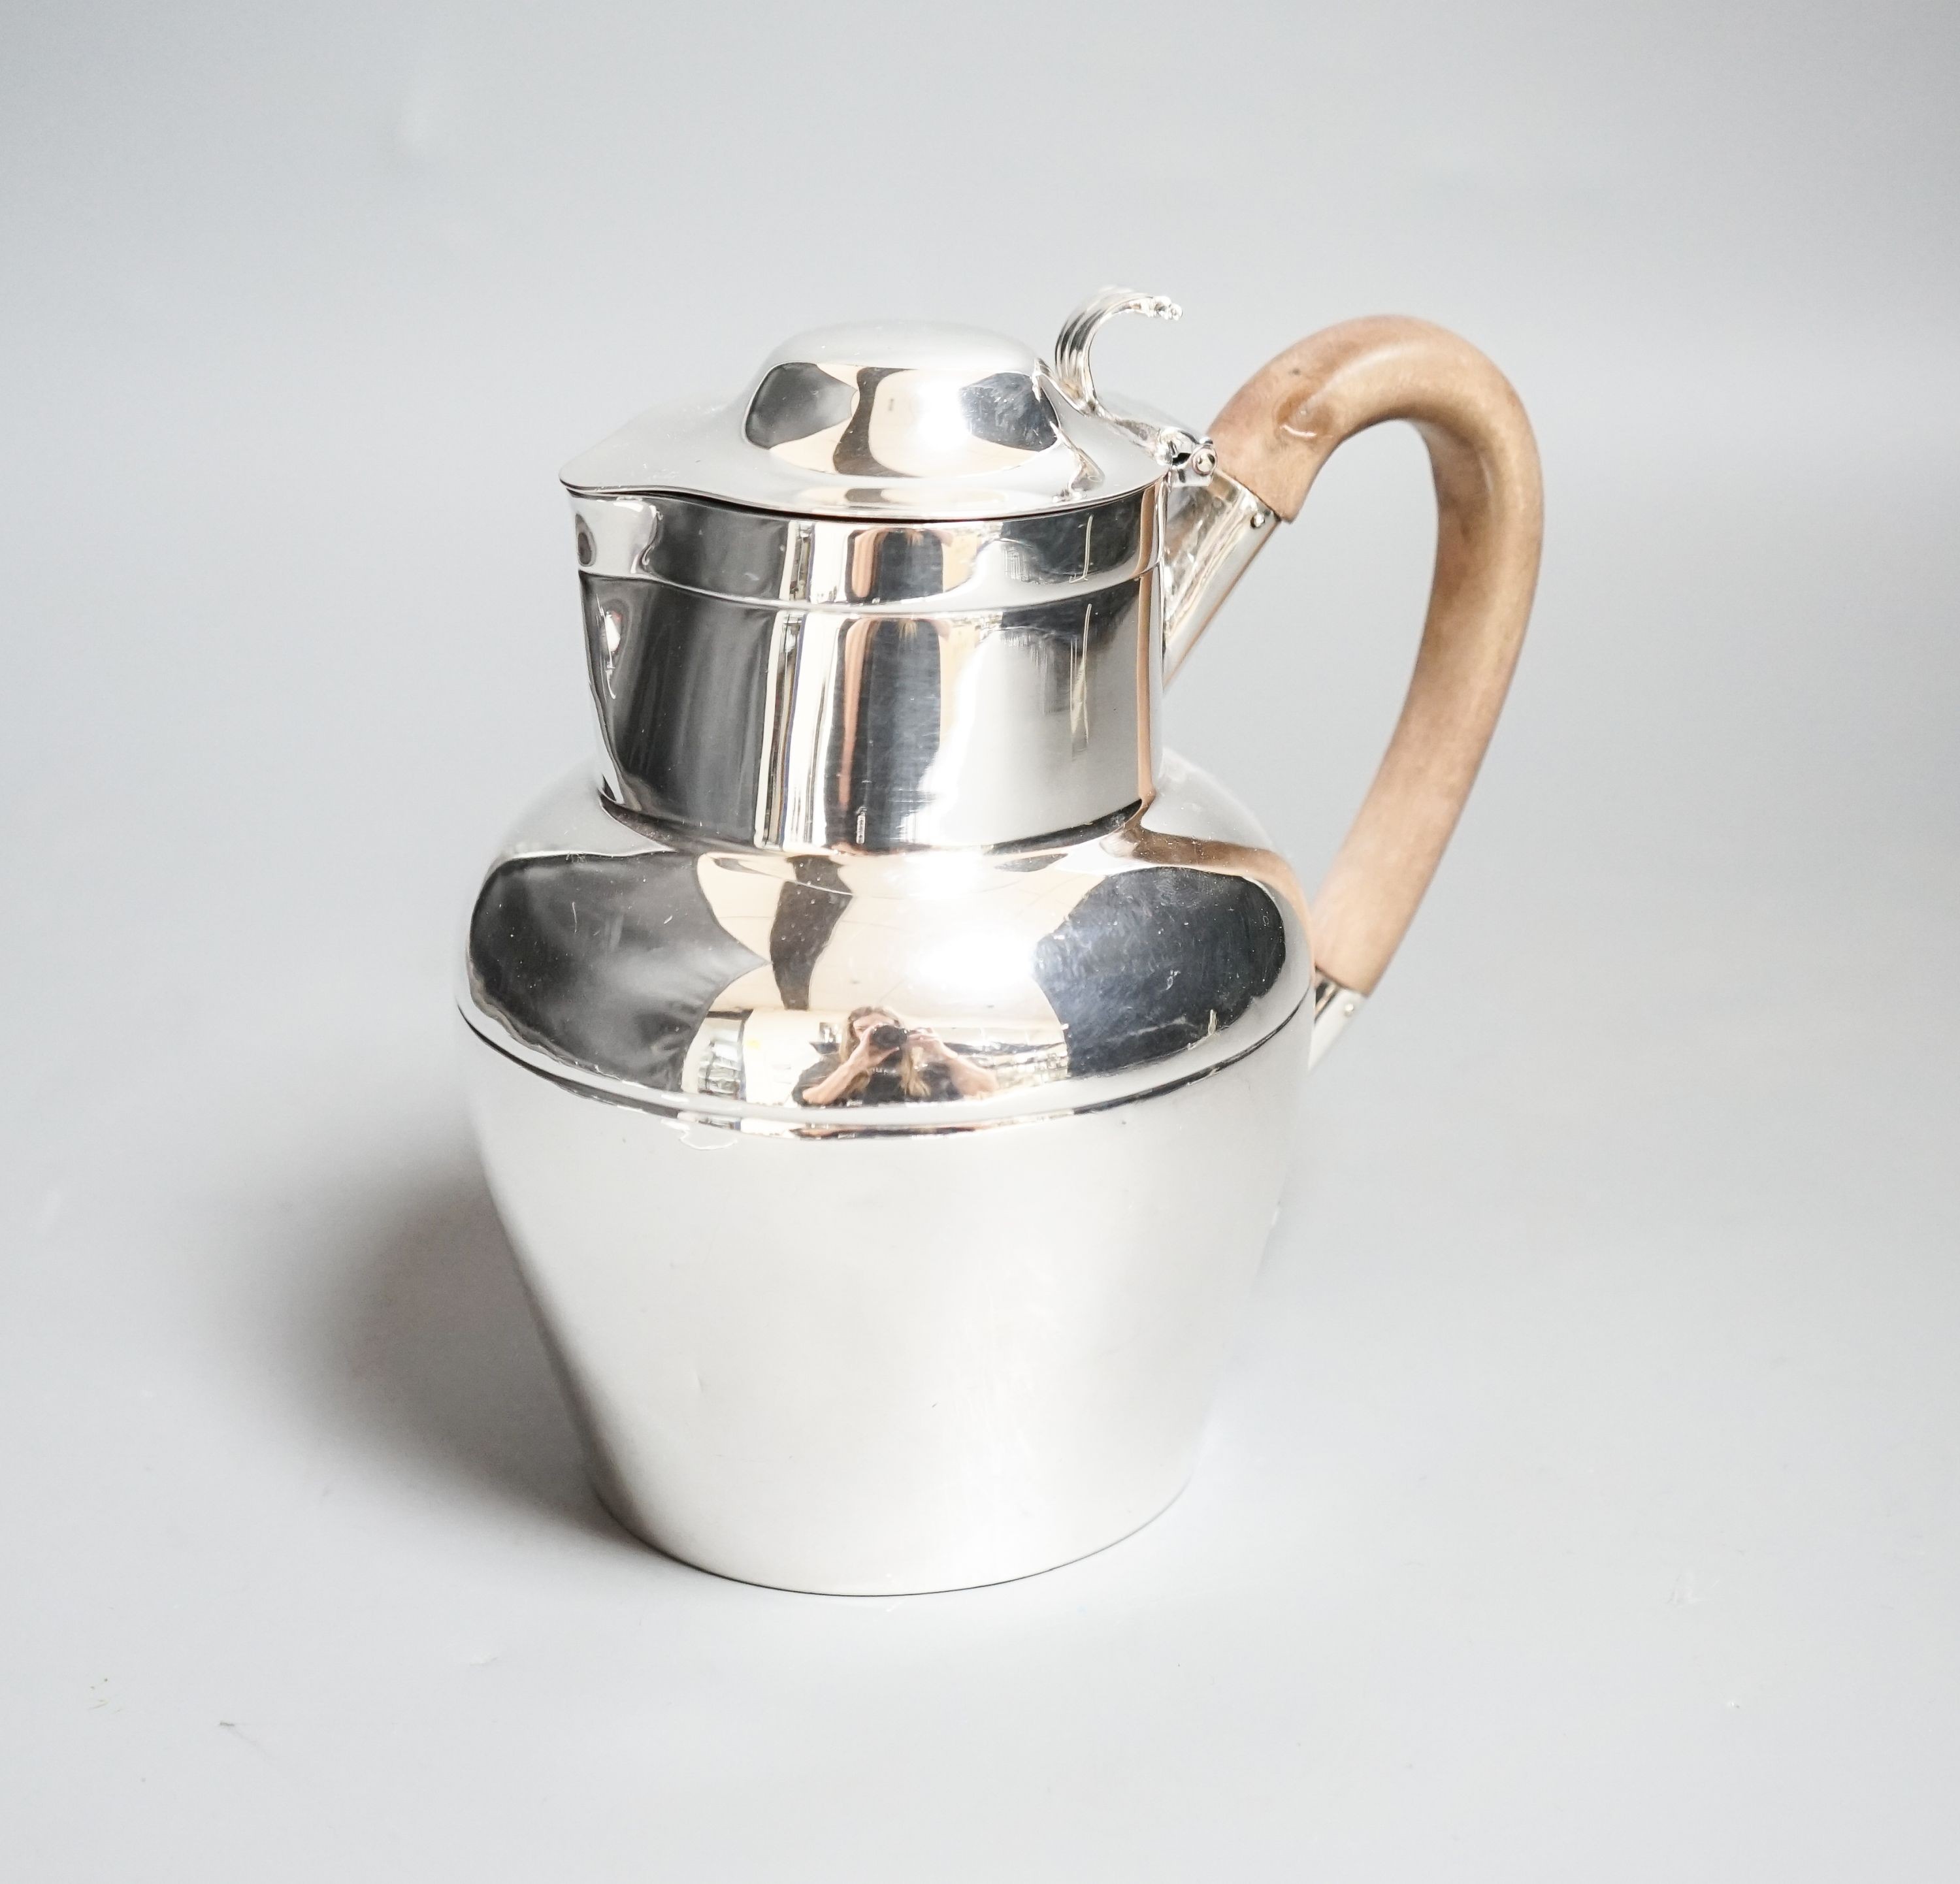 An Edwardian silver 'Jersey can' hot water jug, Sheffield, 1902, height 15.1cm, gross weight 11oz.